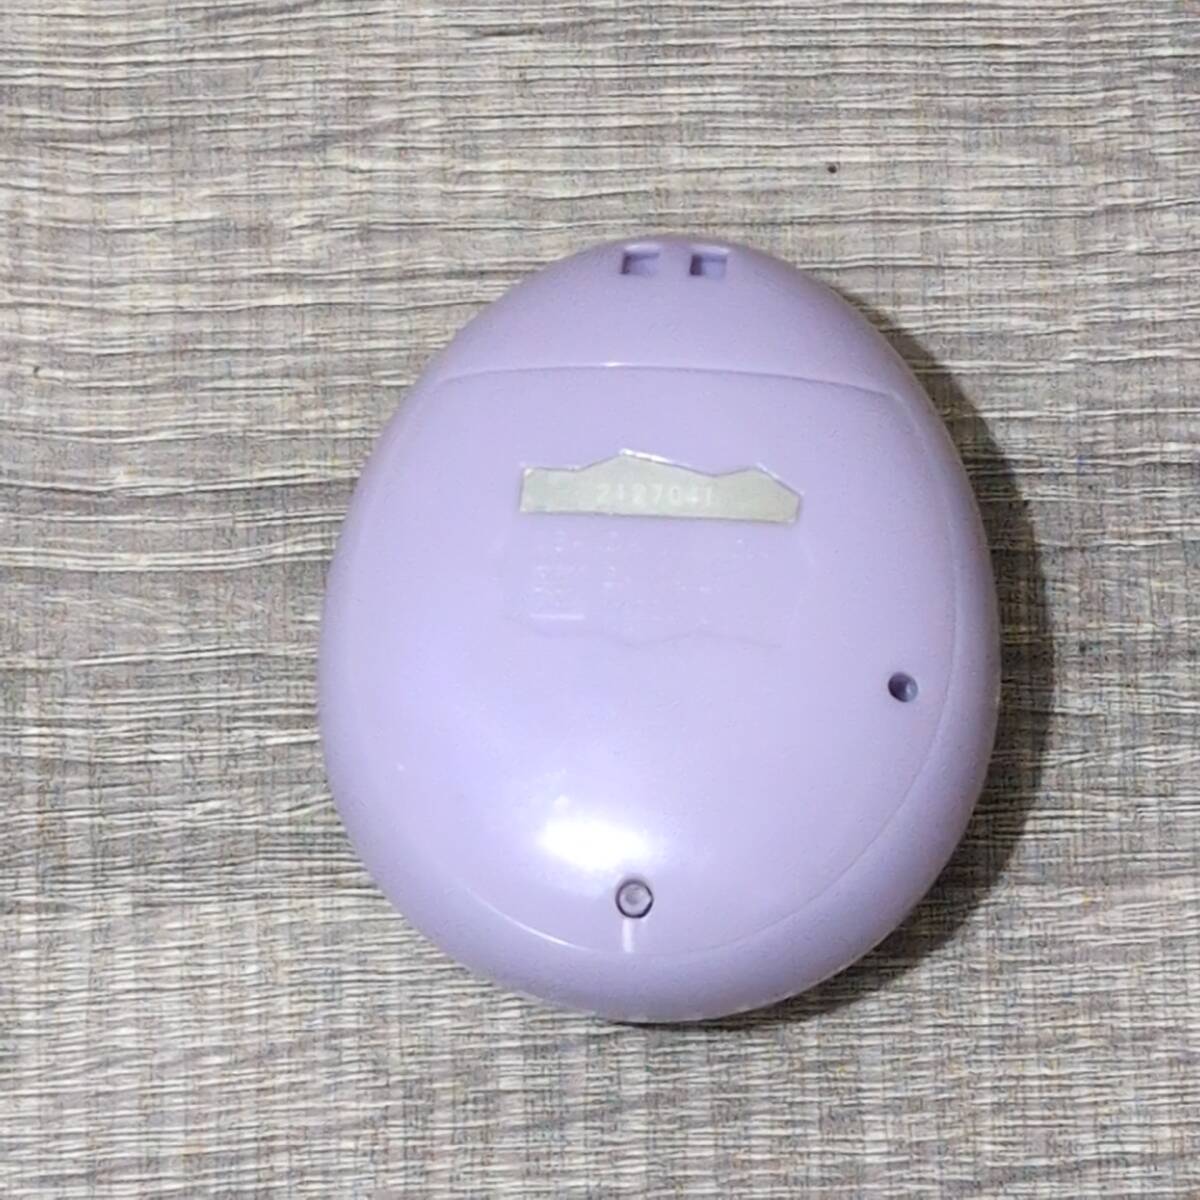 【たまごっち】 たまごっちIDL 携帯ゲーム BANDAI 2004 2011 カラー キラキラ ラメ 紫 パープル 電子ペット 大人気 レア レトロ_画像2